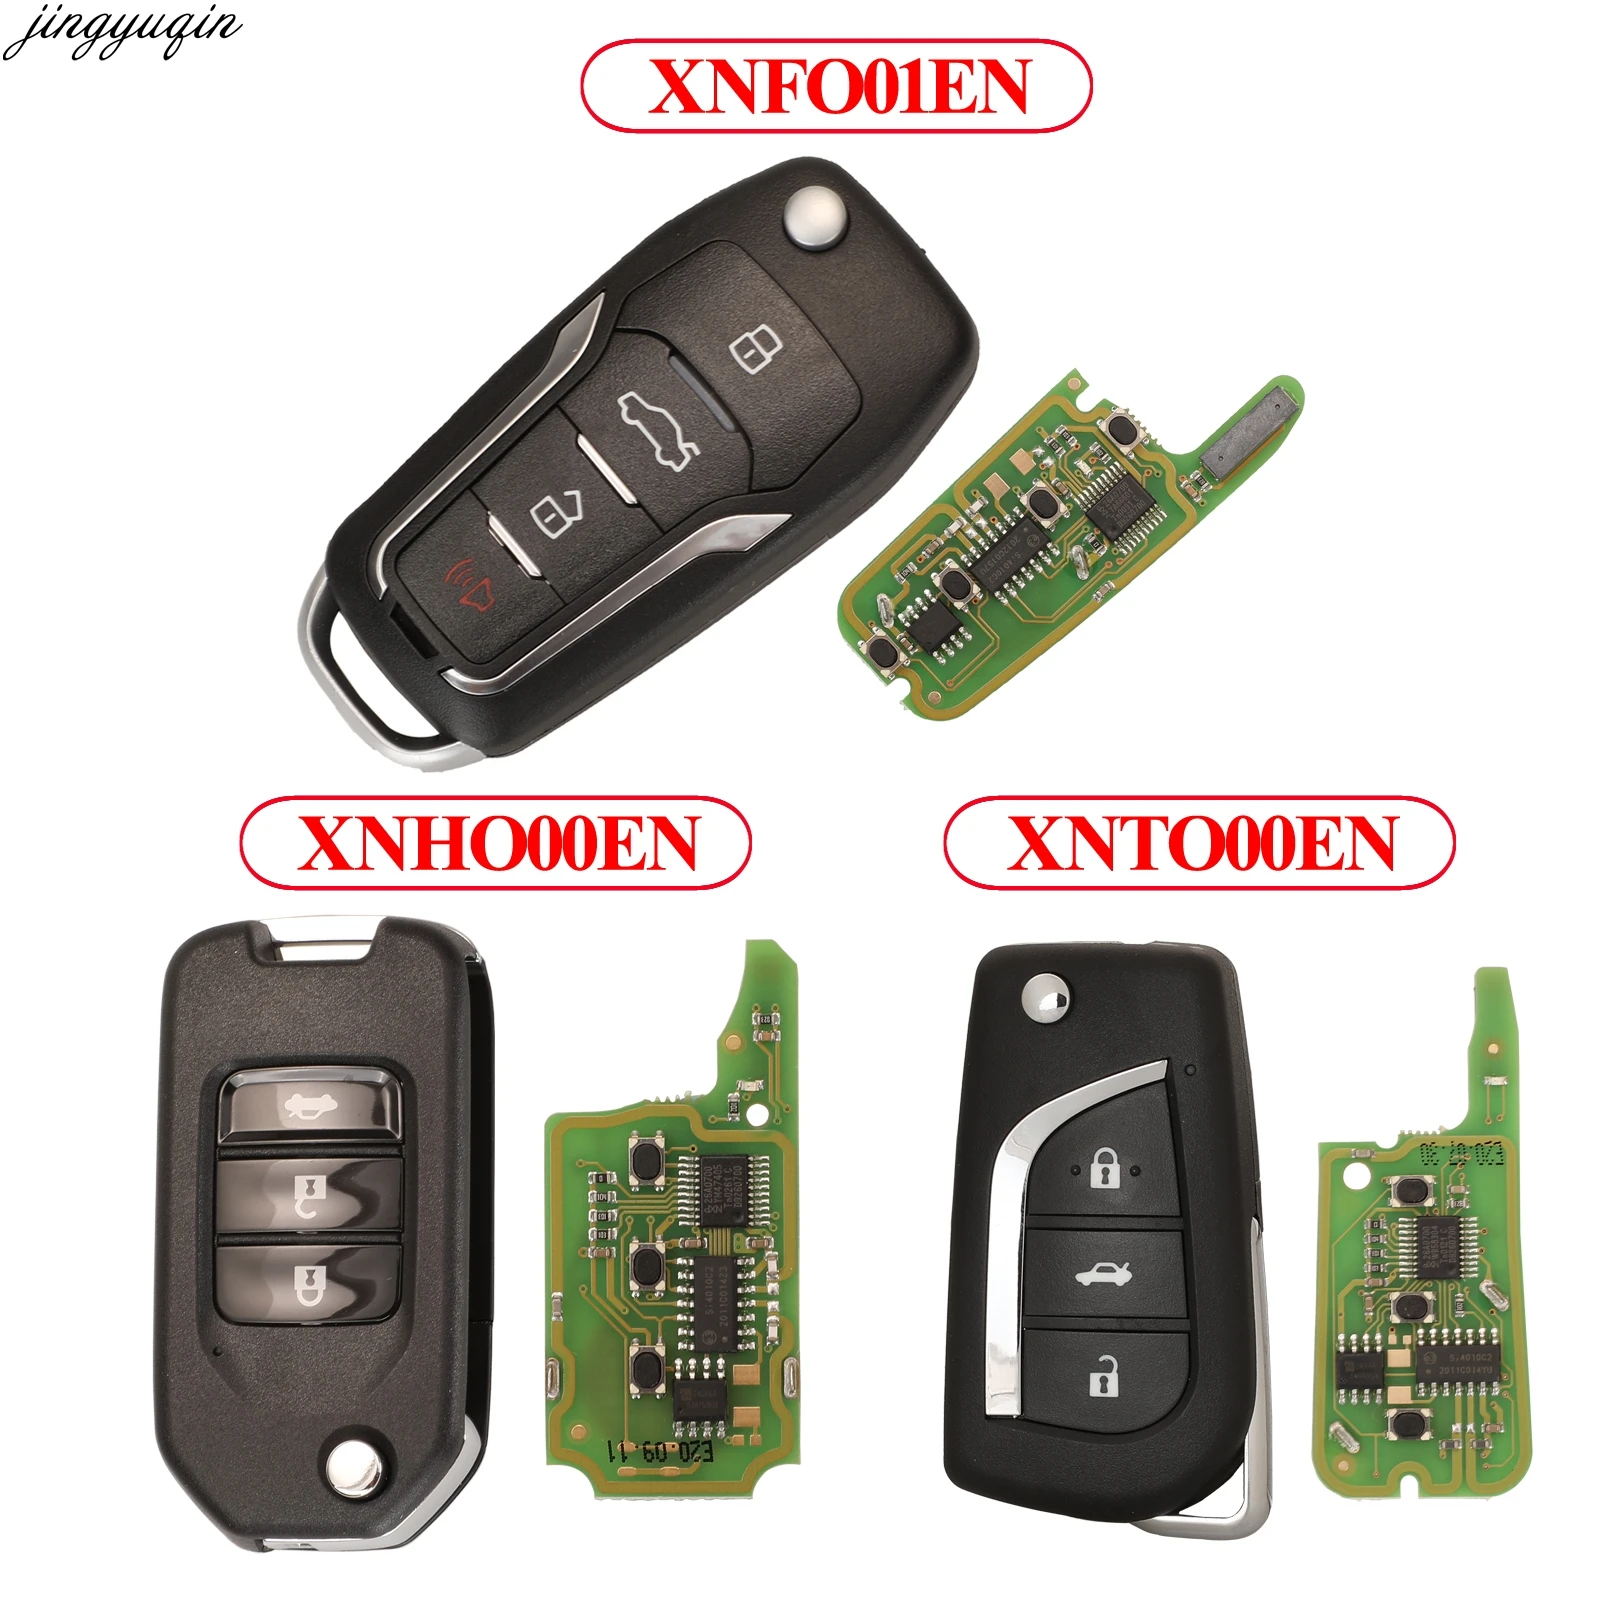 

Jingyuqin Remote Control Flip Car Key For Xhorse VVDI/VVDI 2 Part Number XNFO01EN/XNHO00EN/XNTO00EN 3 Buttons Wireless Fob